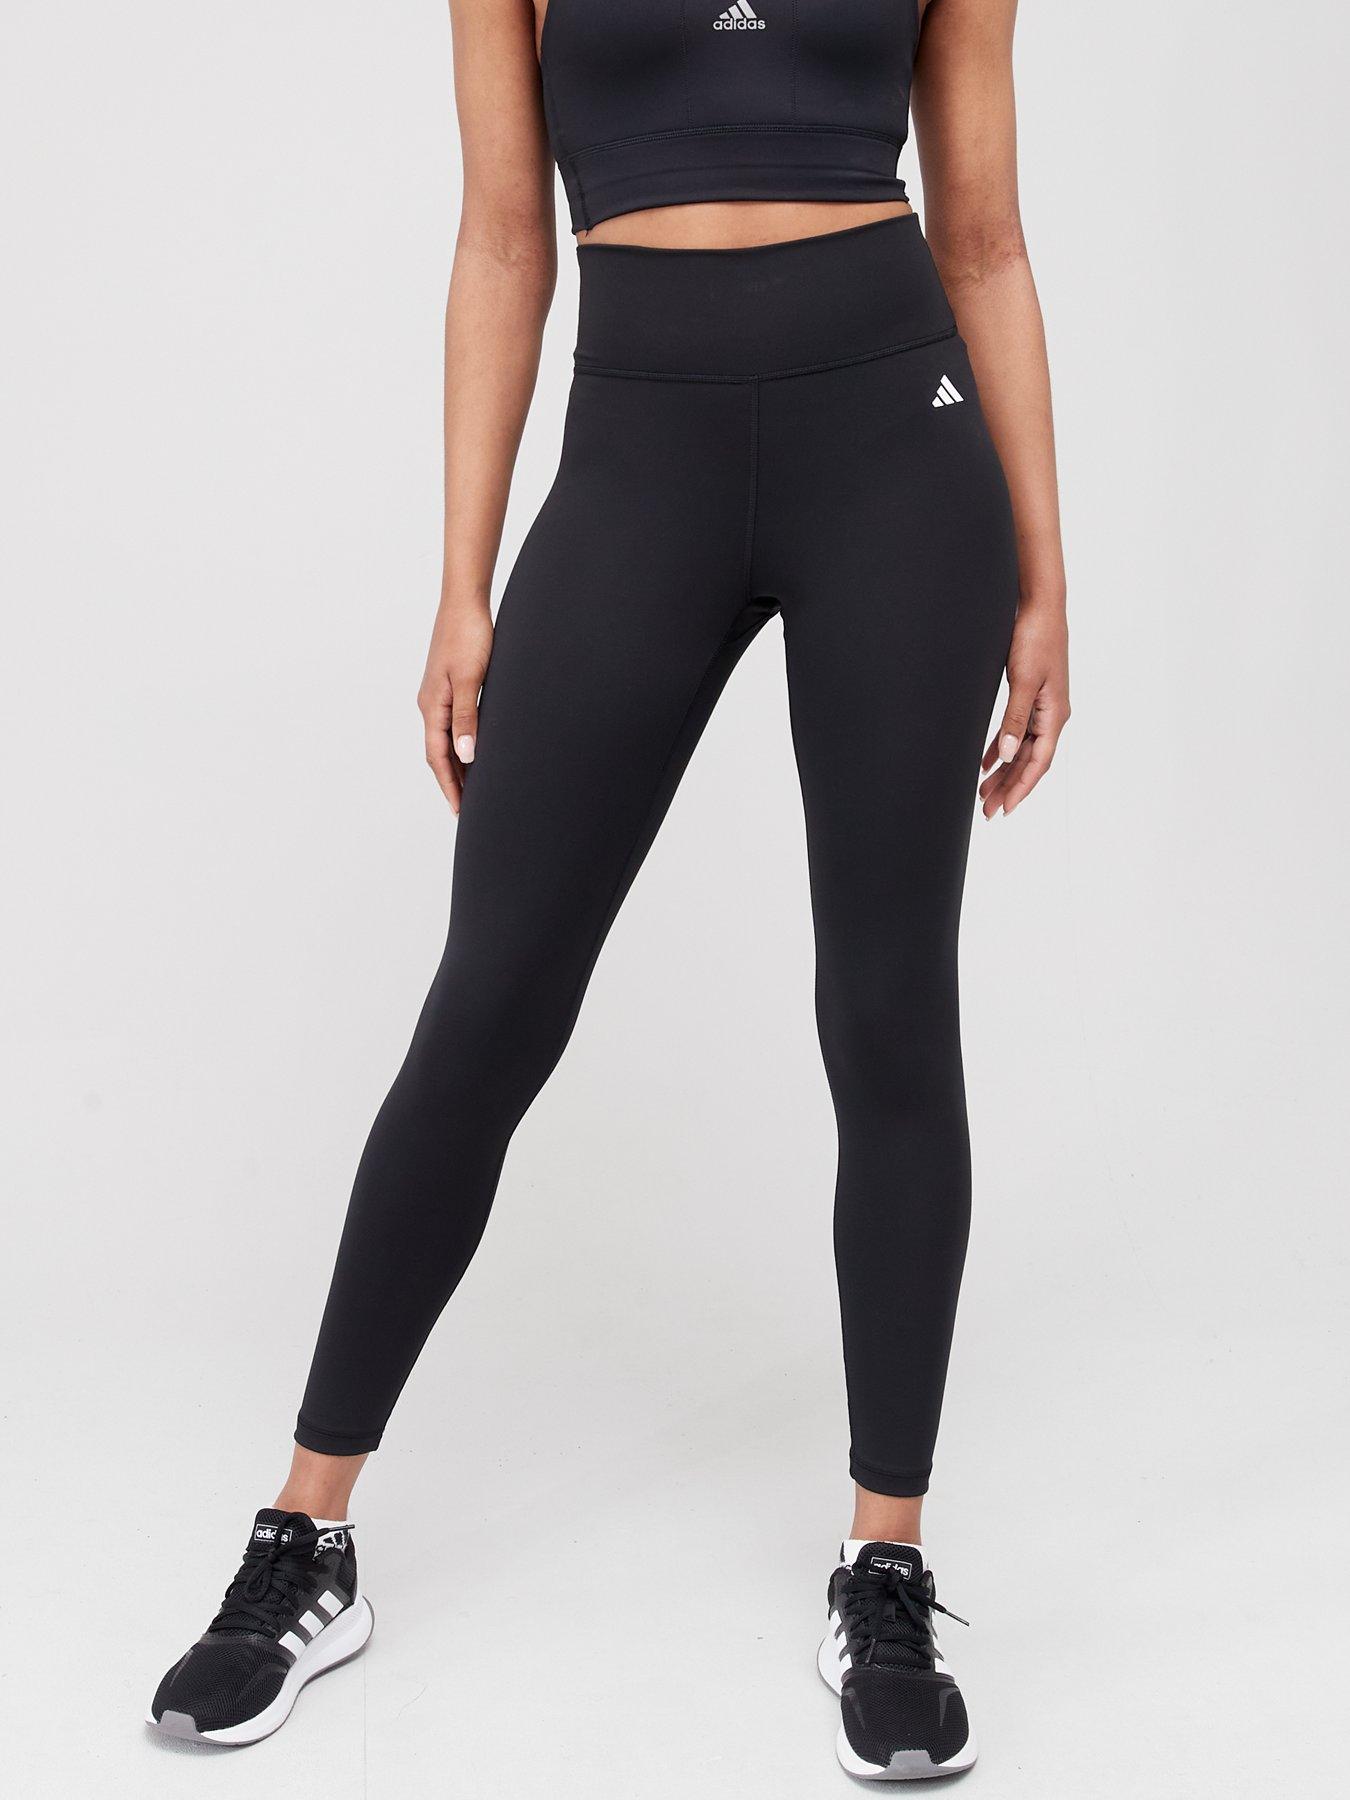 Capris Spritzhigh Waist Capri Leggings For Women - Solid Black Polyester Fitness  Pants